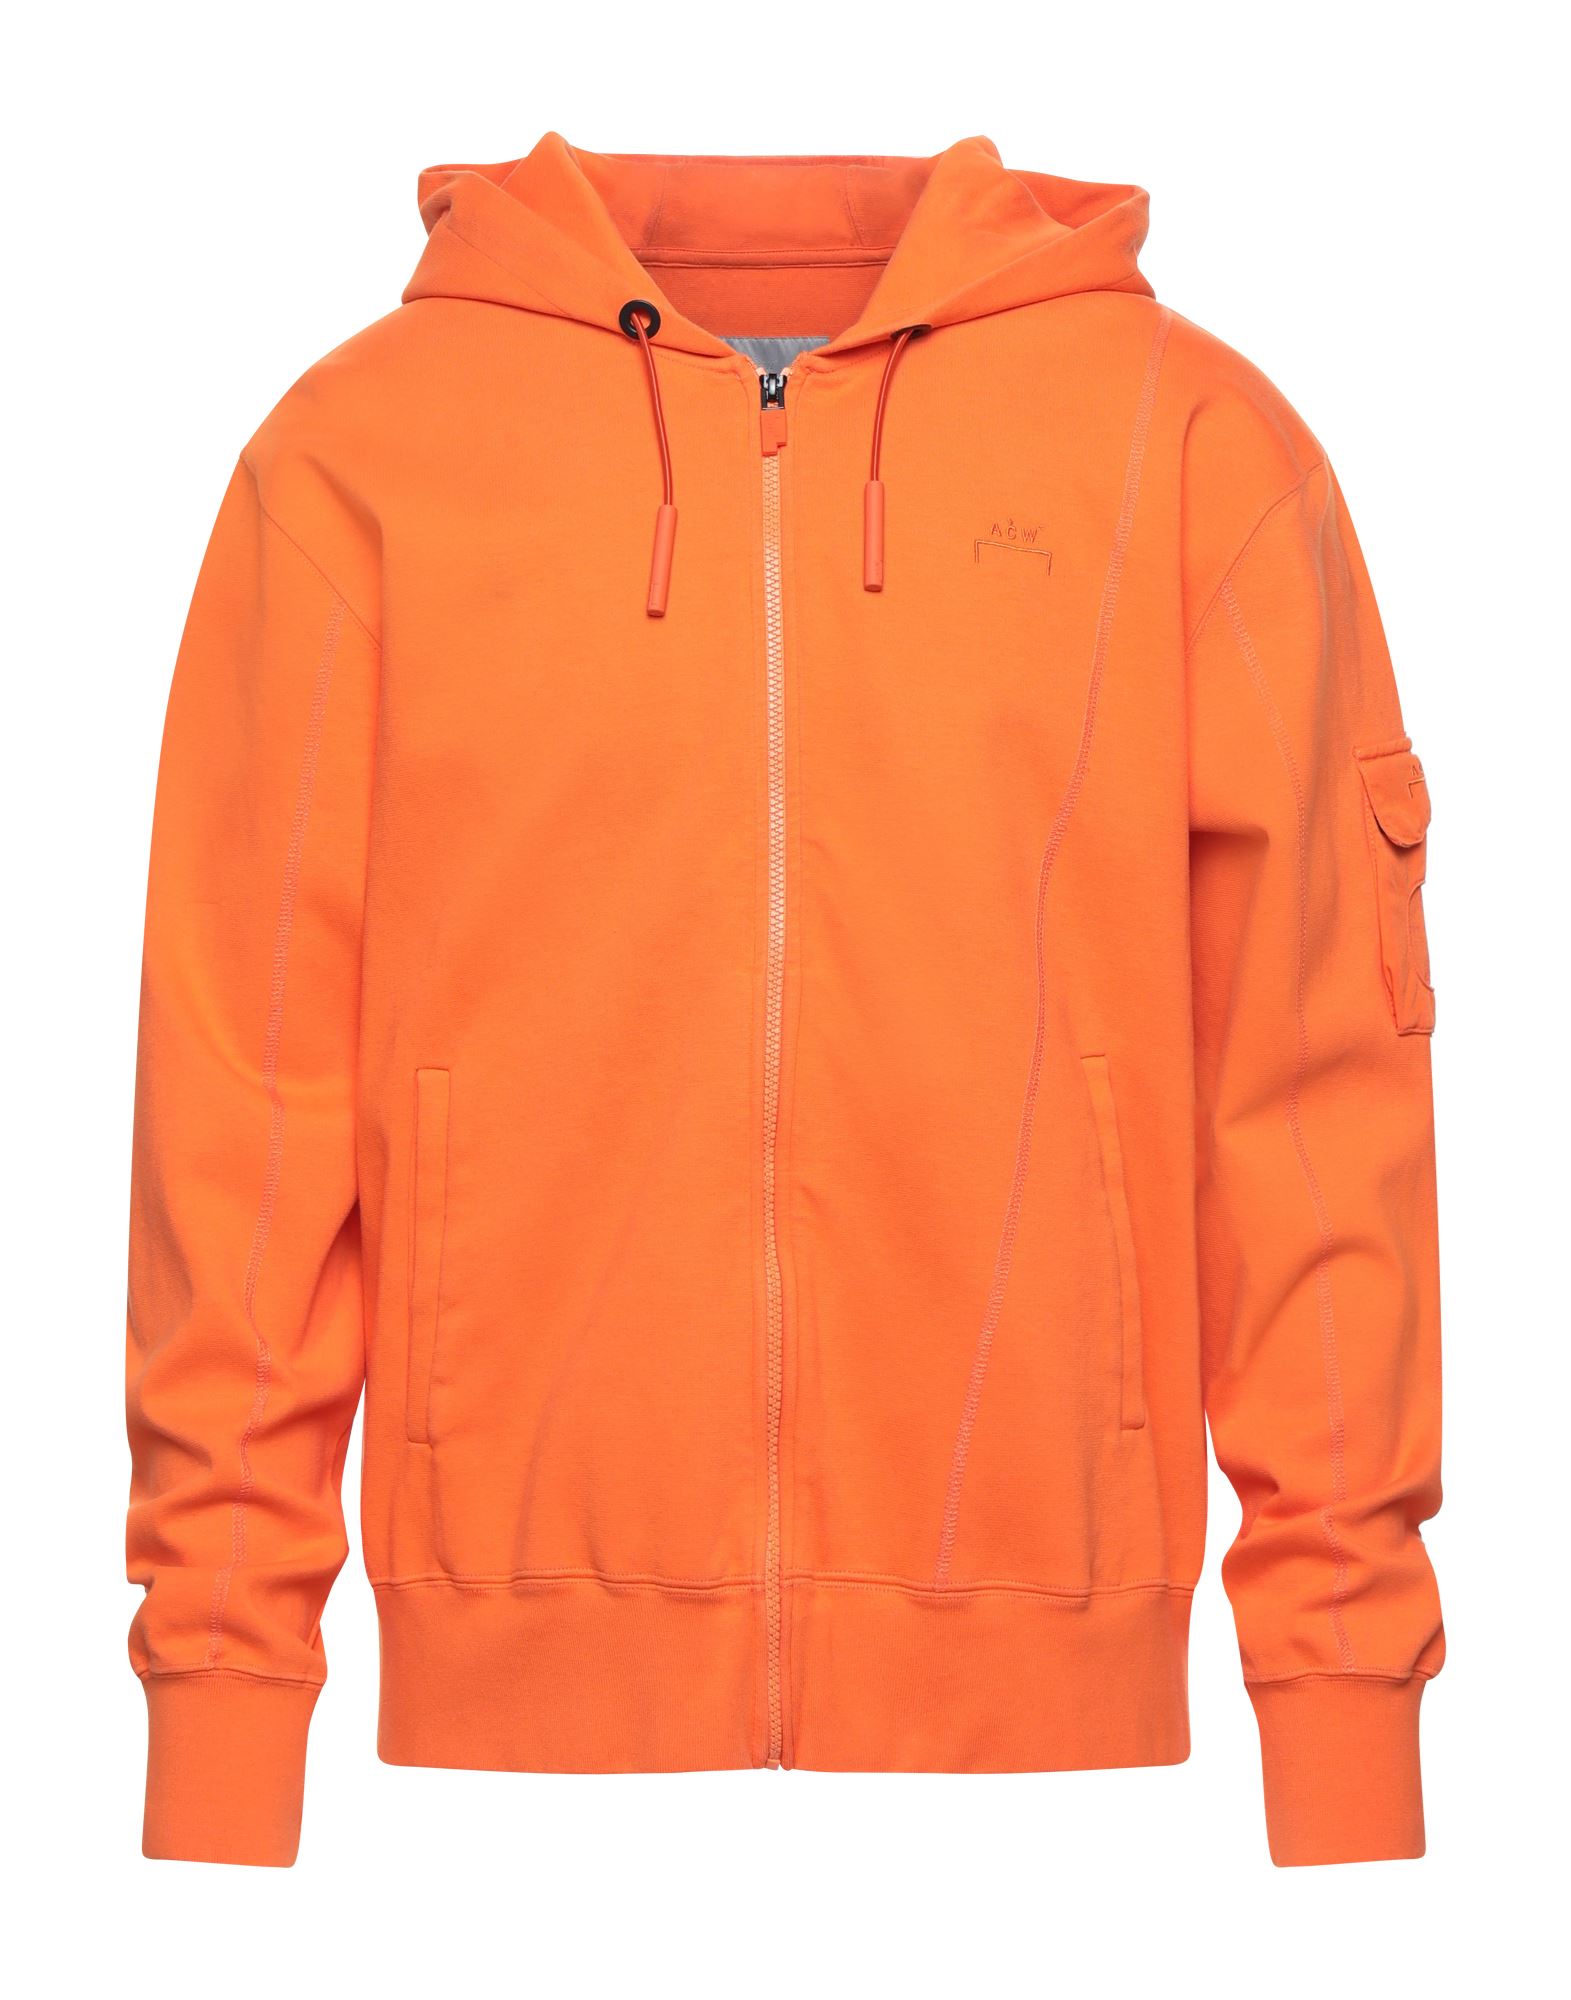 A-COLD-WALL* Sweatshirt Herren Orange von A-COLD-WALL*